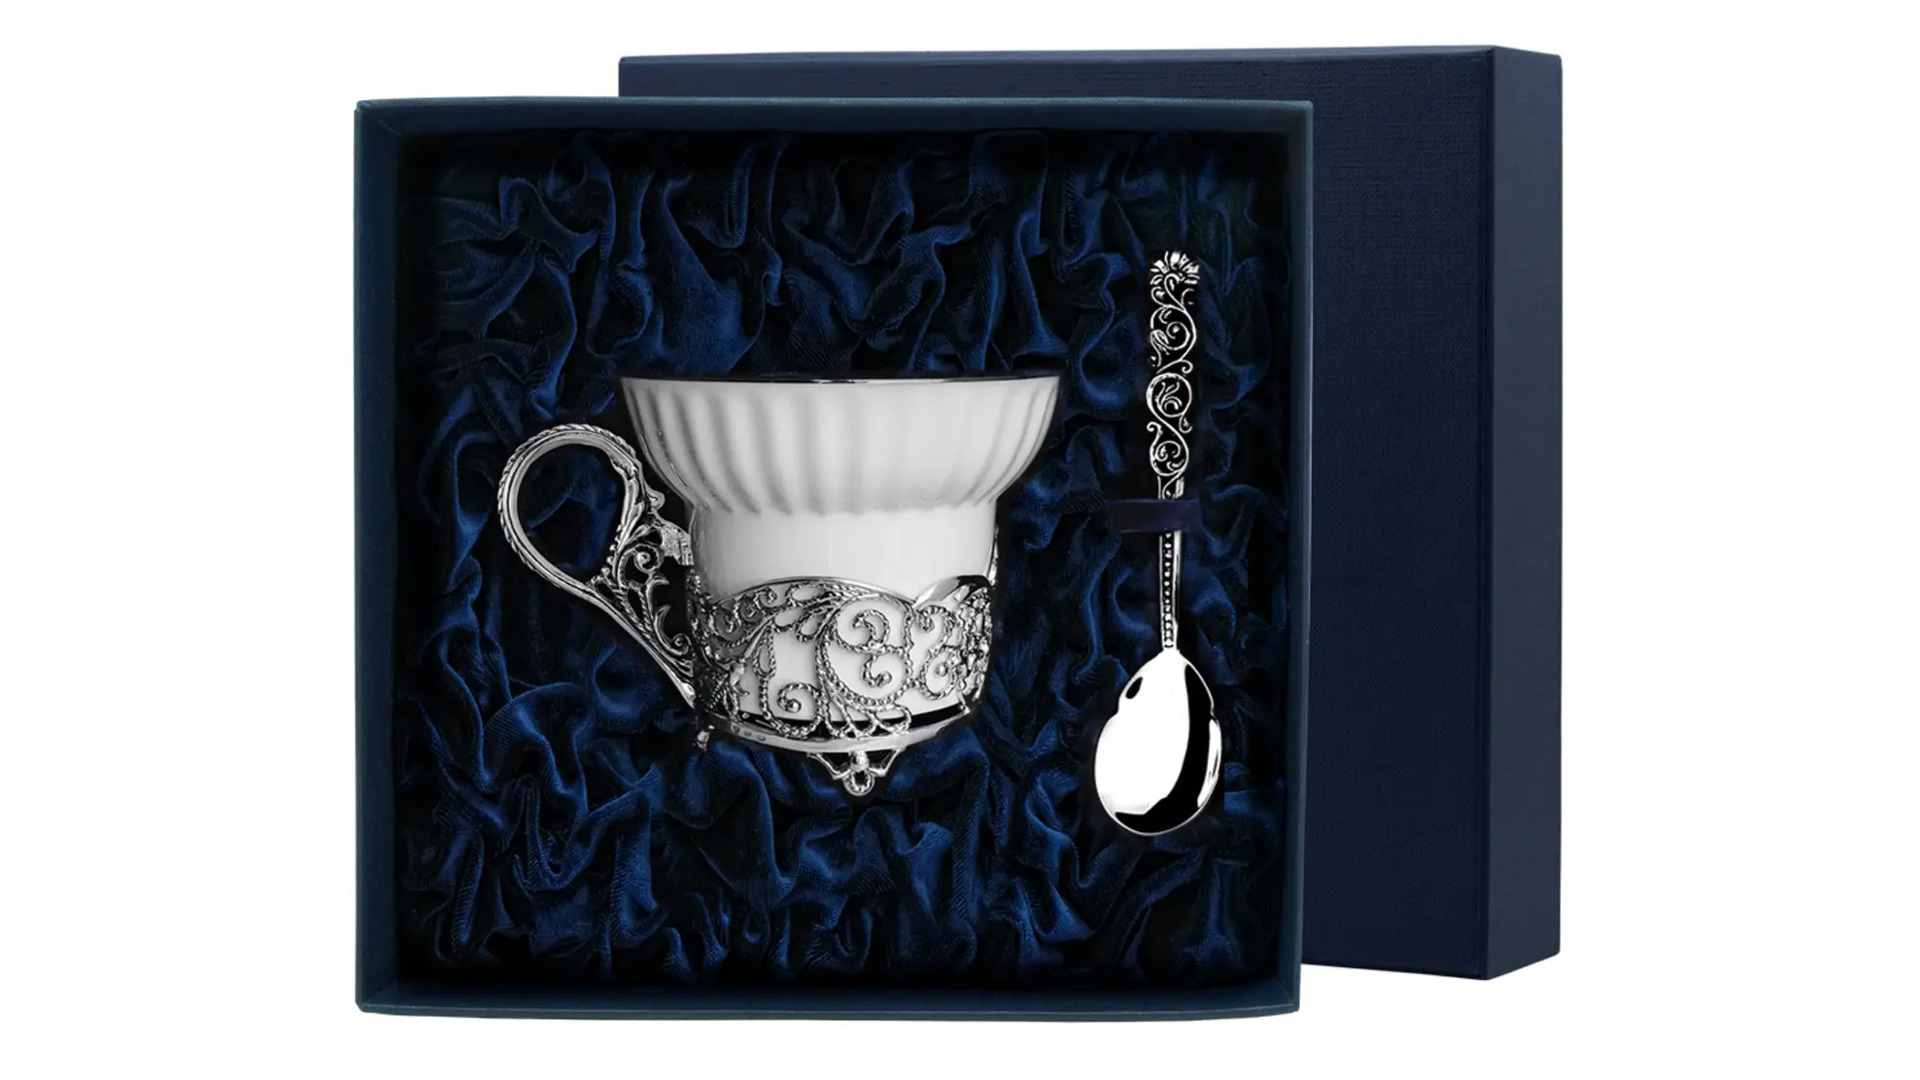 Чашка чайная с ложкой в футляре АргентА Кружевные узоры 70,03 г, 2 предмета, серебро 925, фарфор